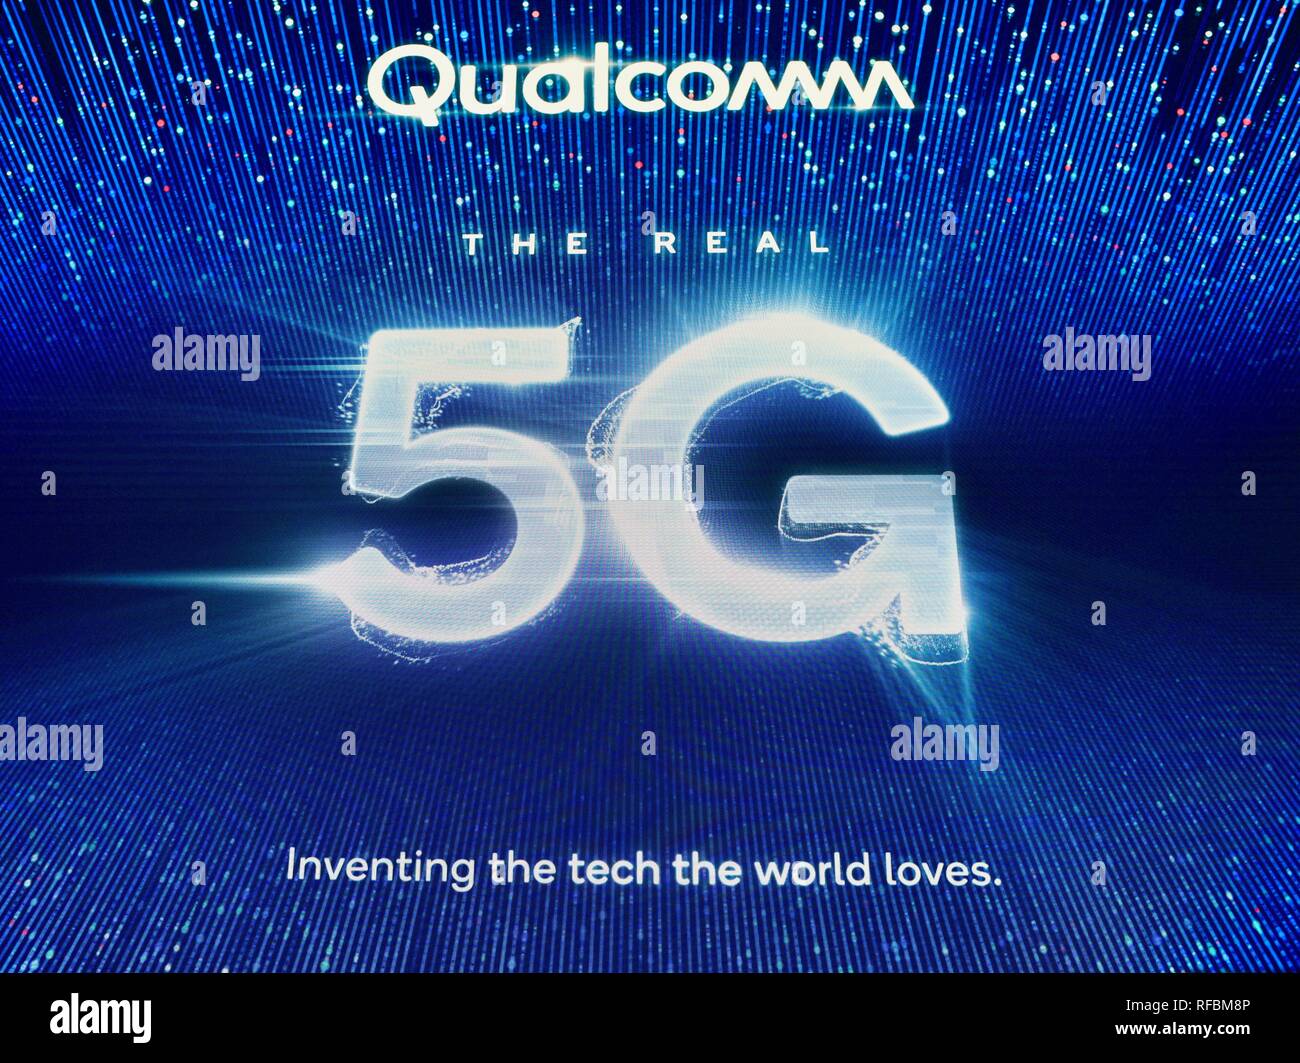 Qualcomm presentano stand promozione 5G la connettività del network cellulare, per i telefoni intelligenti e dispositivi cellulari, al CES trade show di Las Vegas Stati Uniti d'America Foto Stock